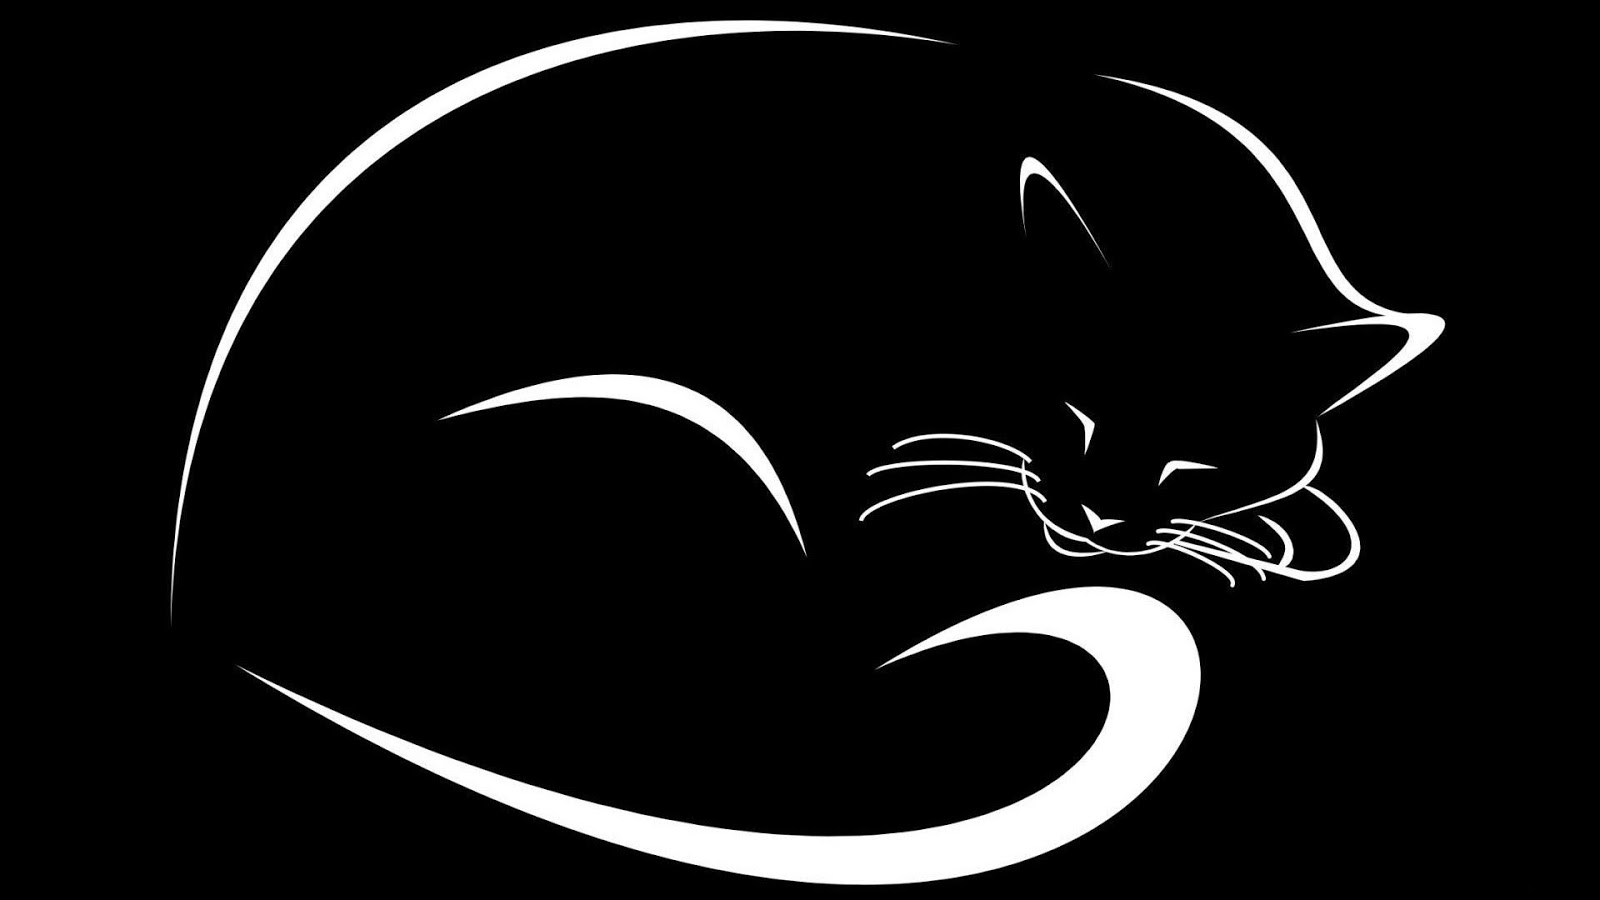 siyah beyaz fondo de pantalla,gato,gato negro,gatos pequeños a medianos,bigotes,felidae